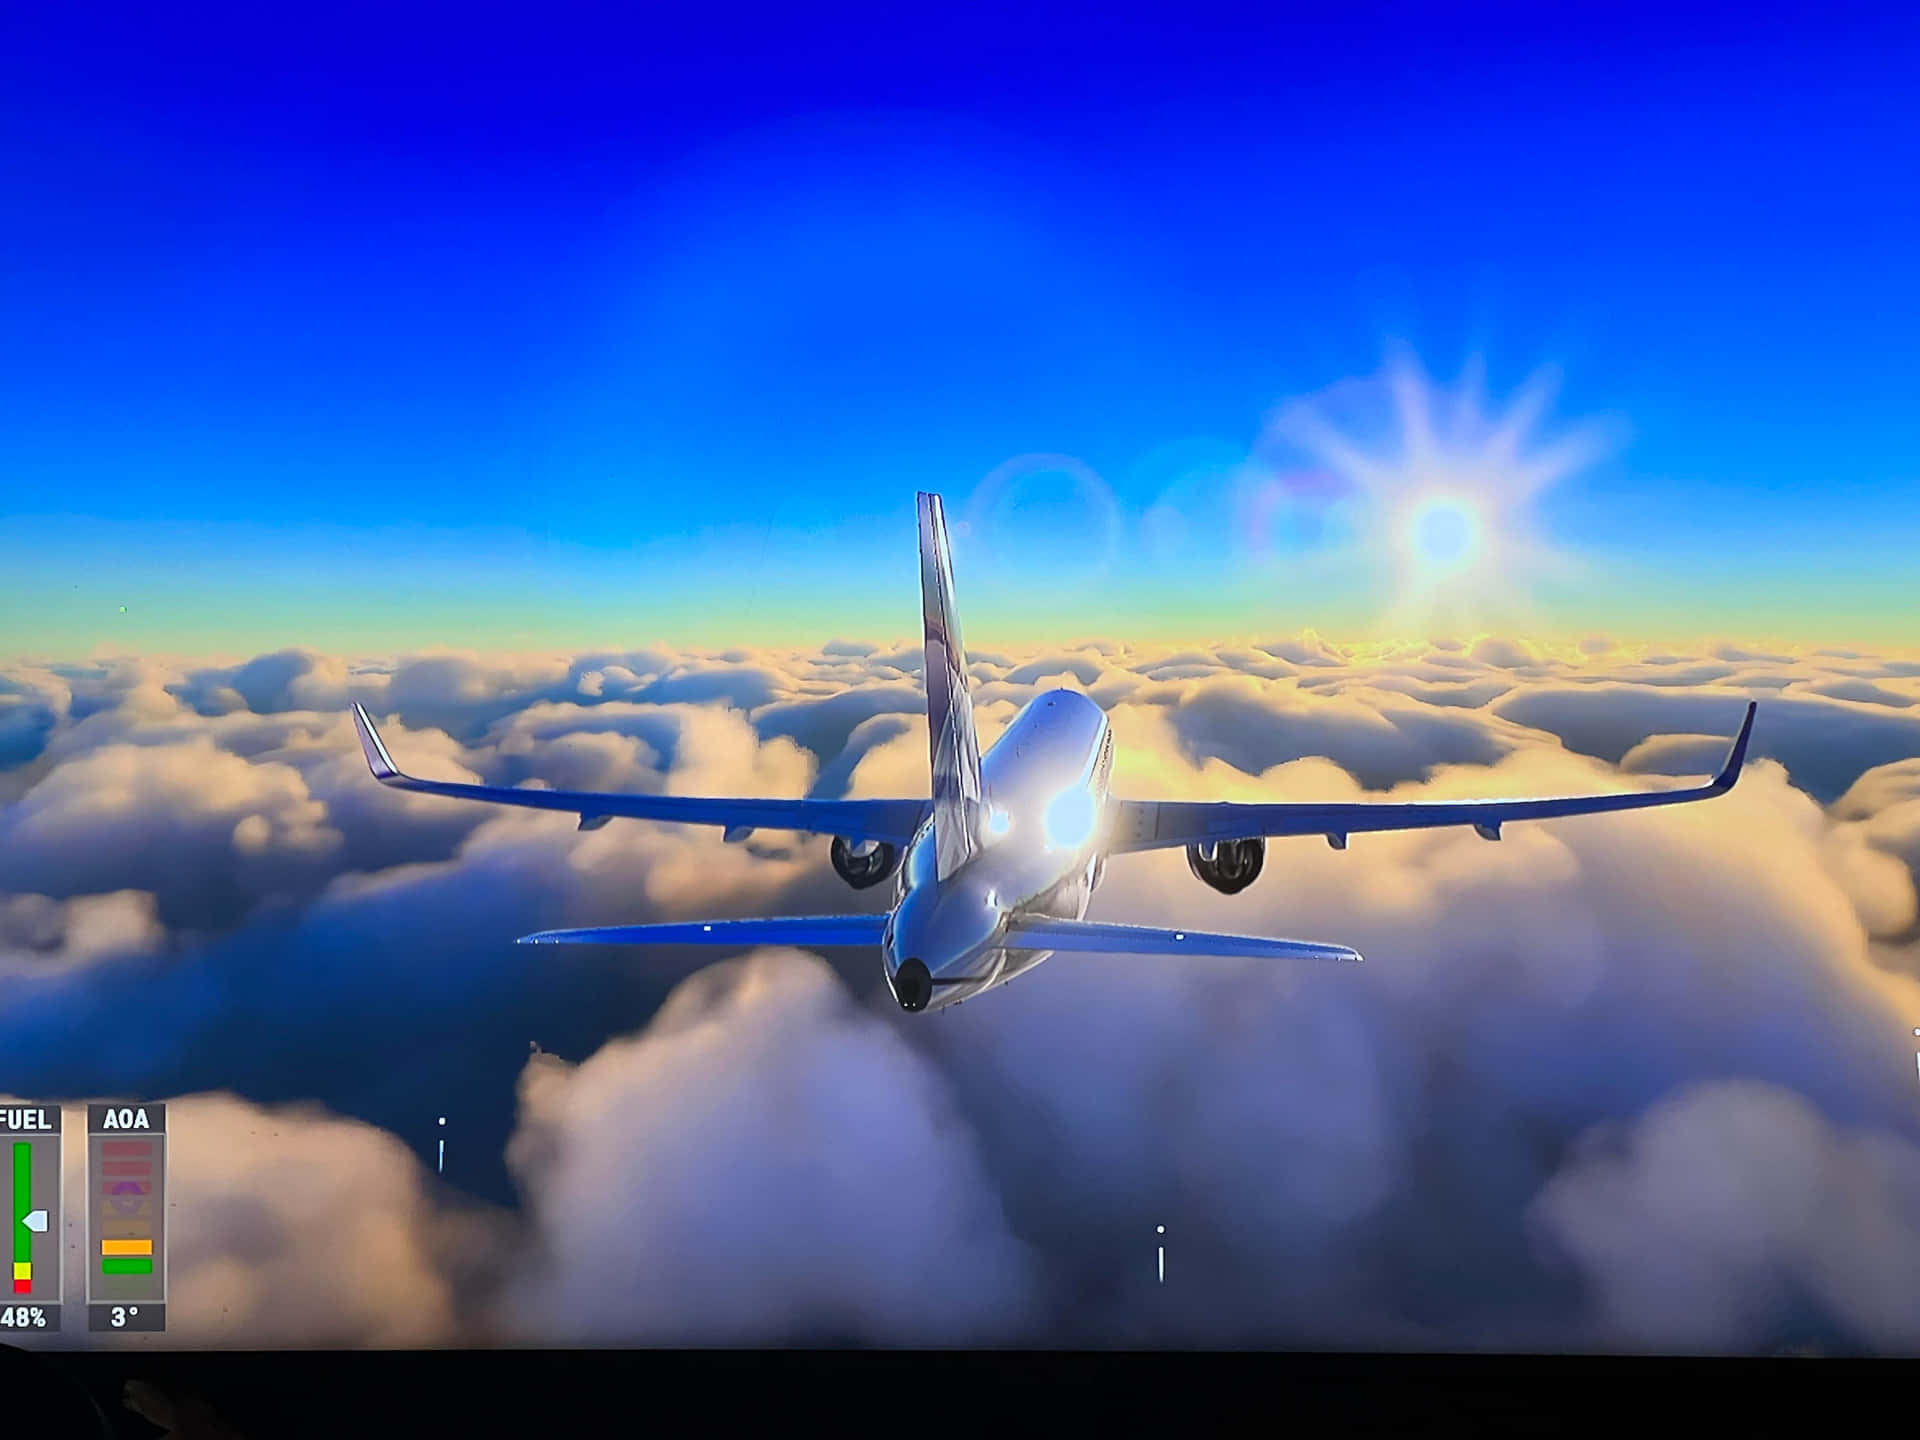 4kmicrosoft Flight Simulator Bakgrundsfoto Av Faktiskt Spelskärmdump.